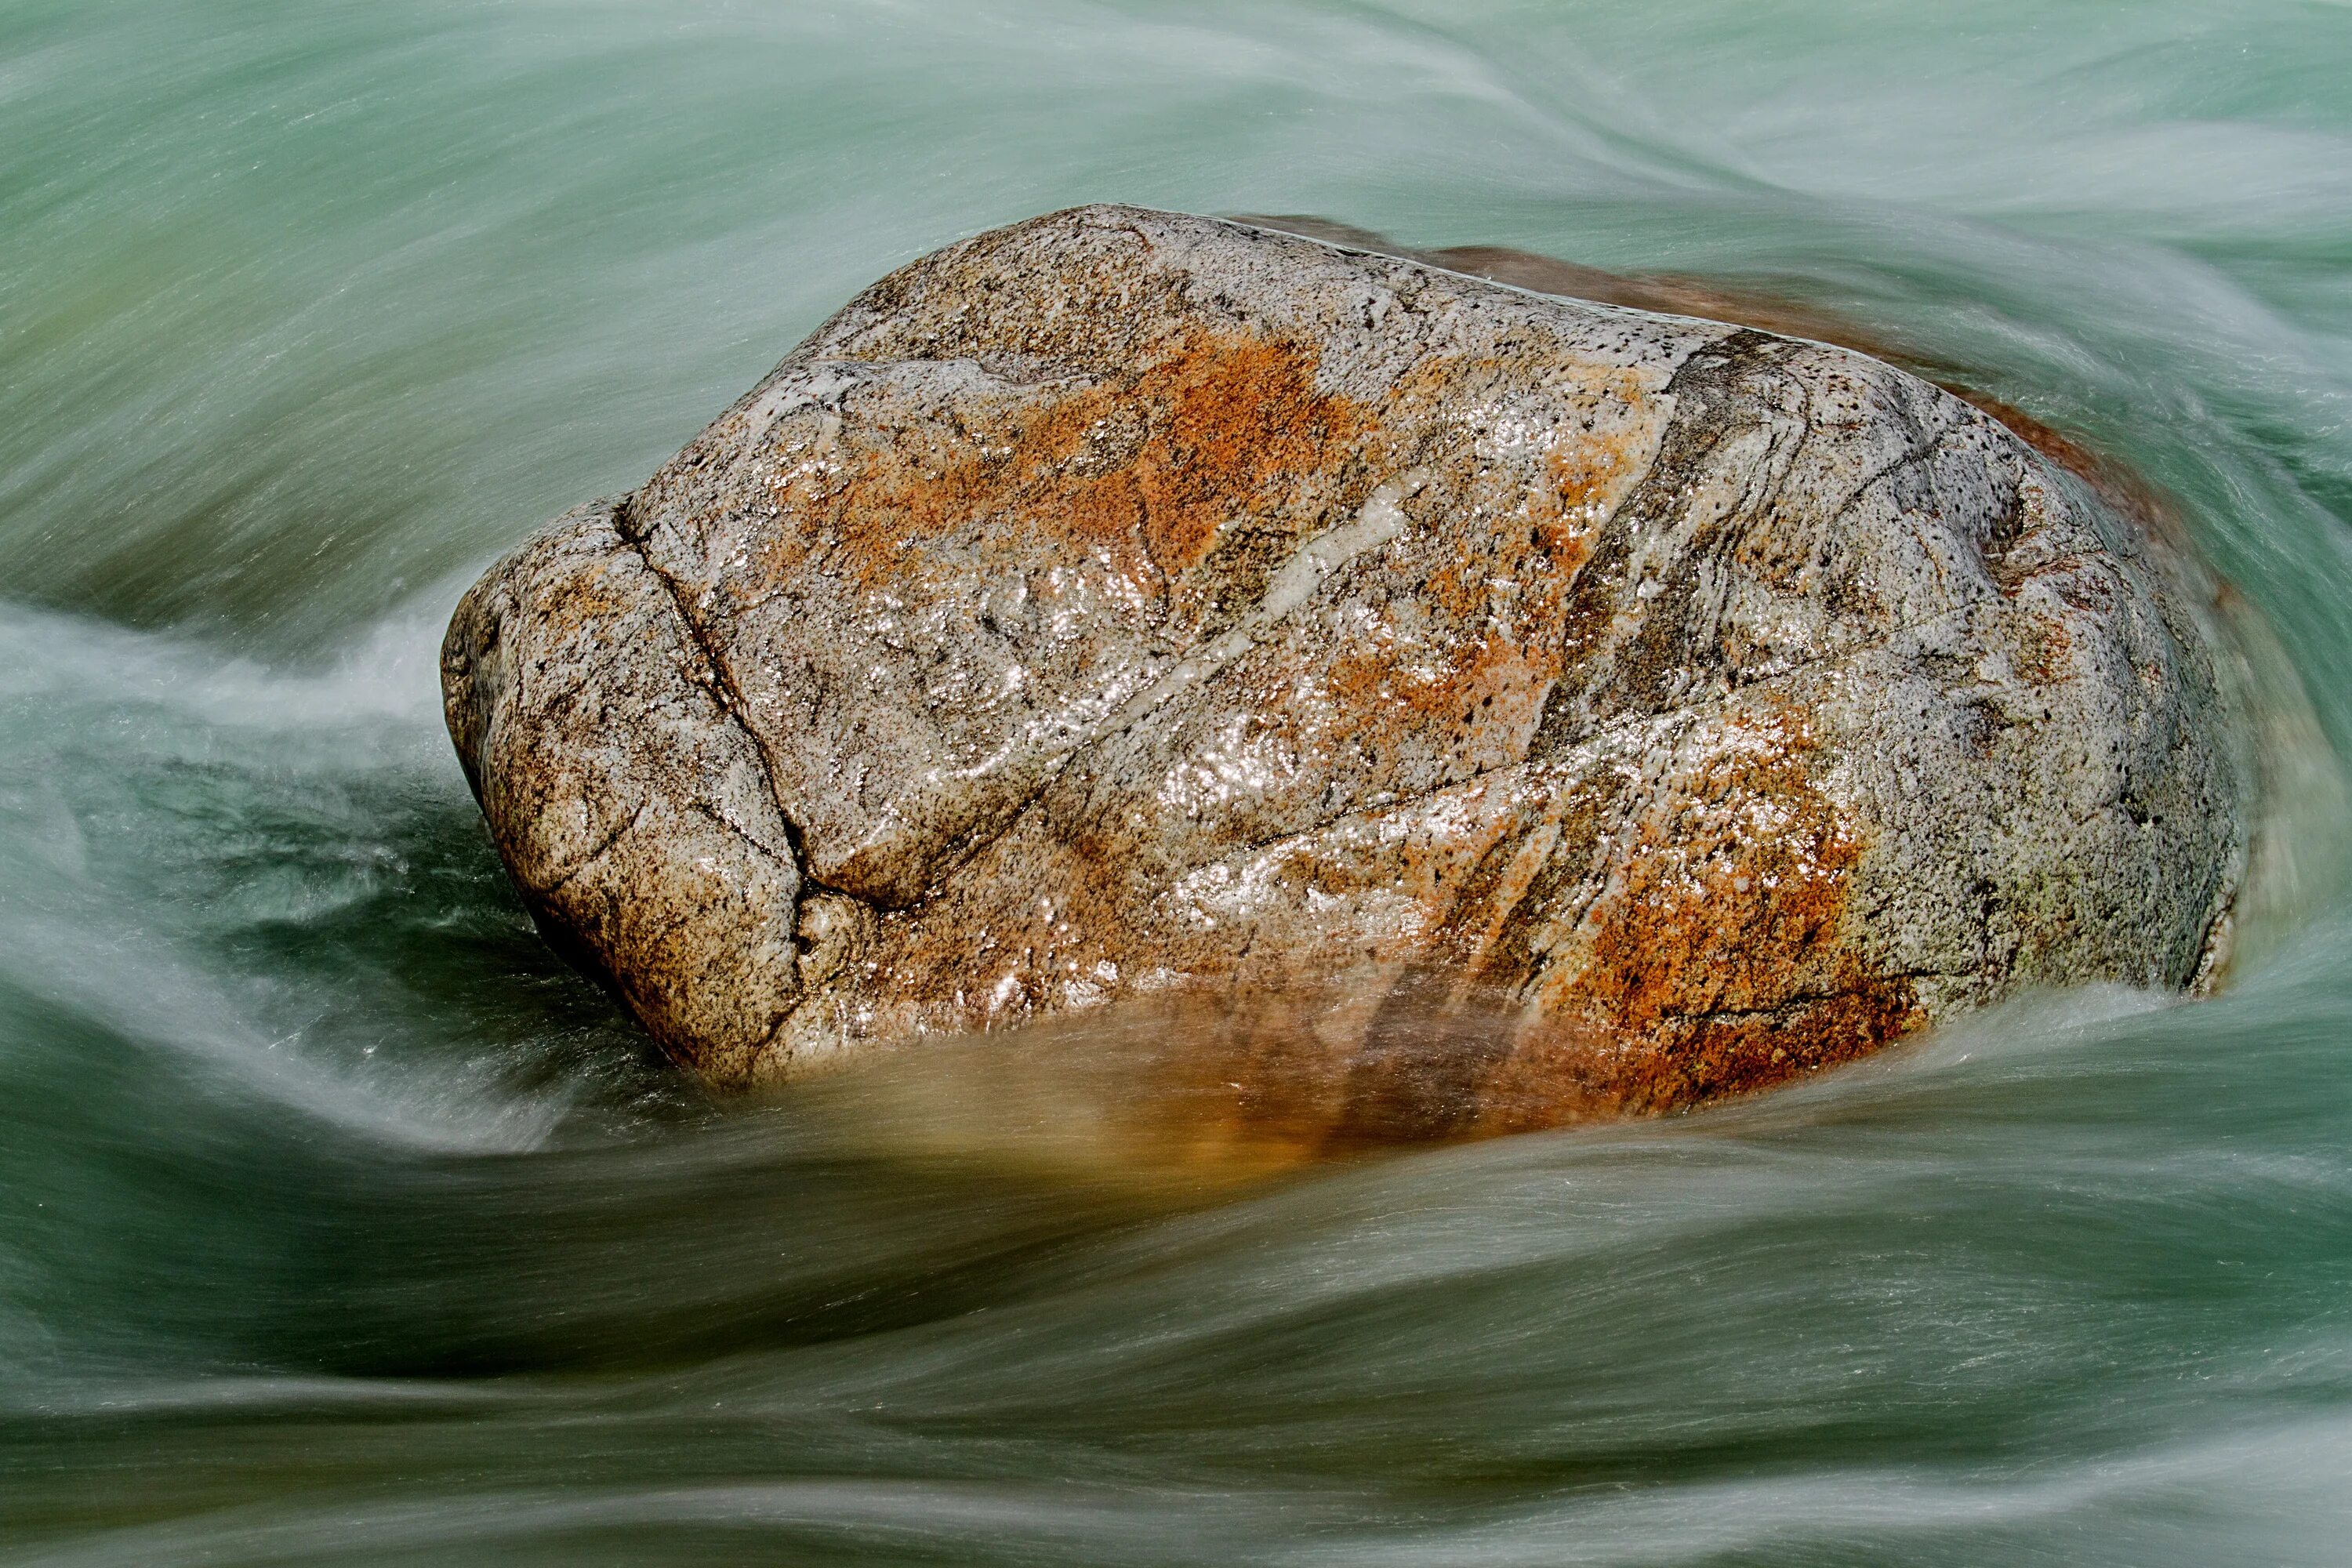 Силен вода. Речка камни. Валун в воде. Камни в реке. Камень валун и вода.